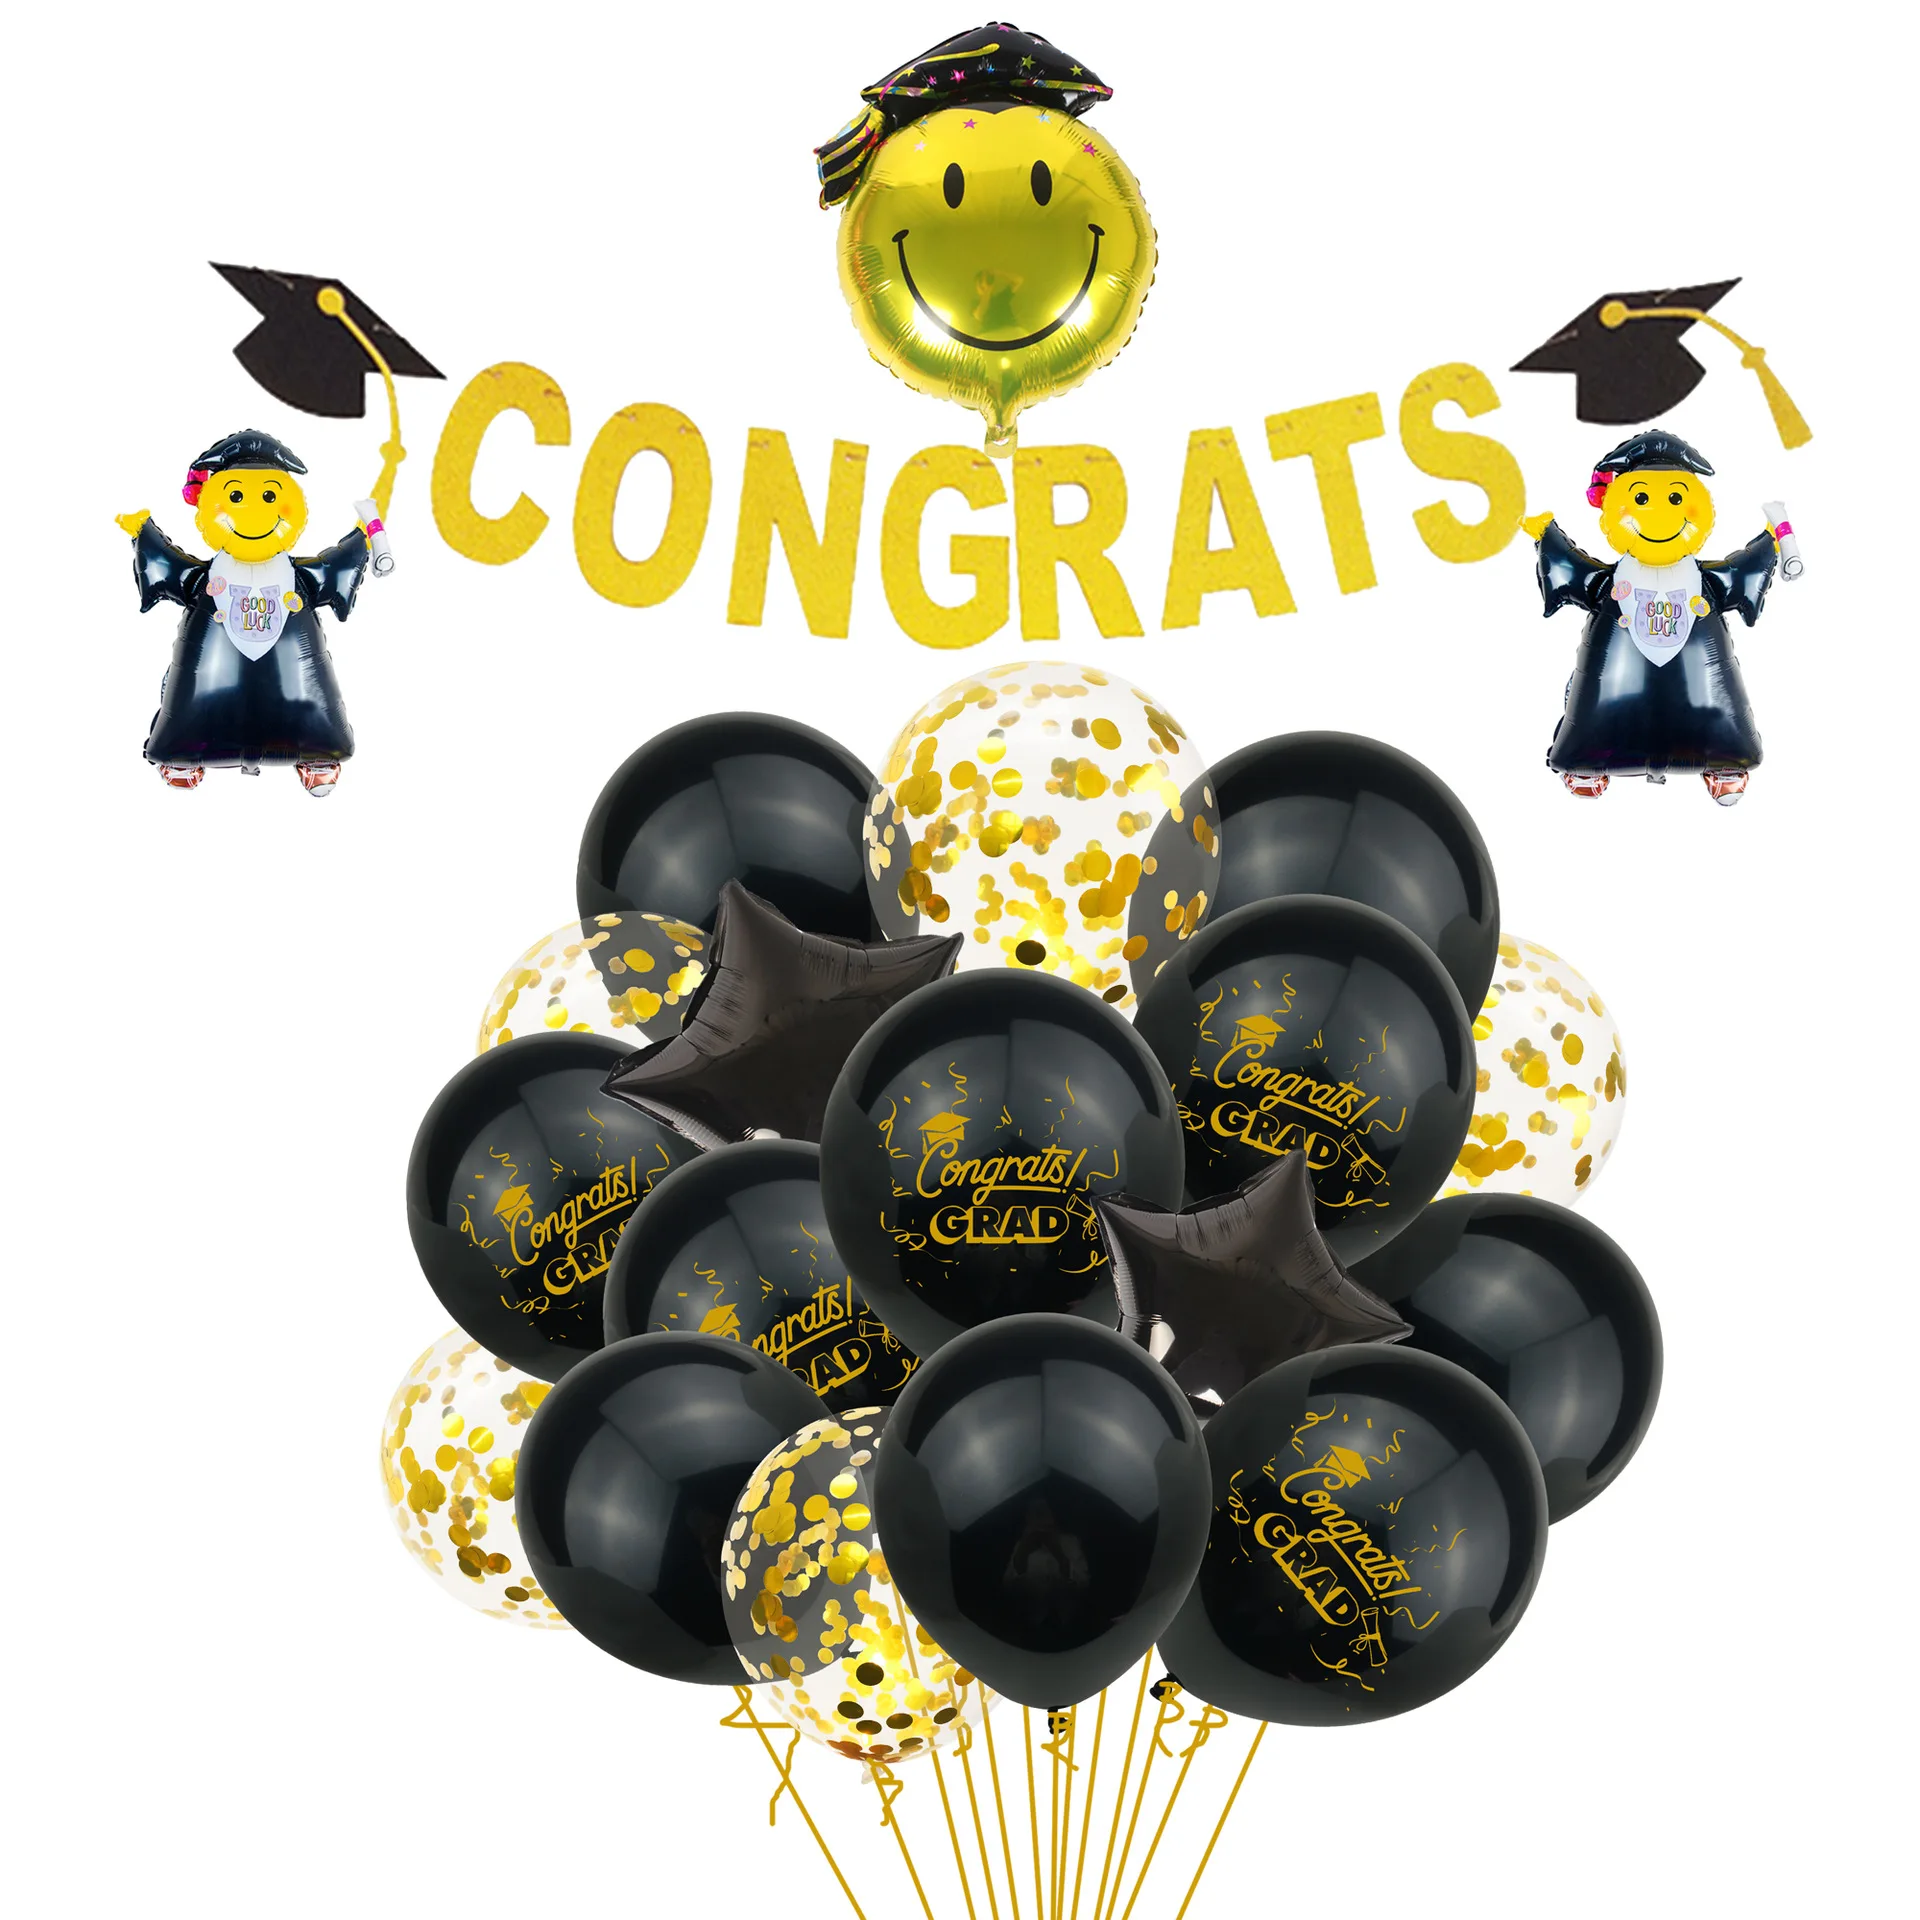 Toys Congratulation Ball CONGRATS Foil Balloons  Graduation Party Decoration 